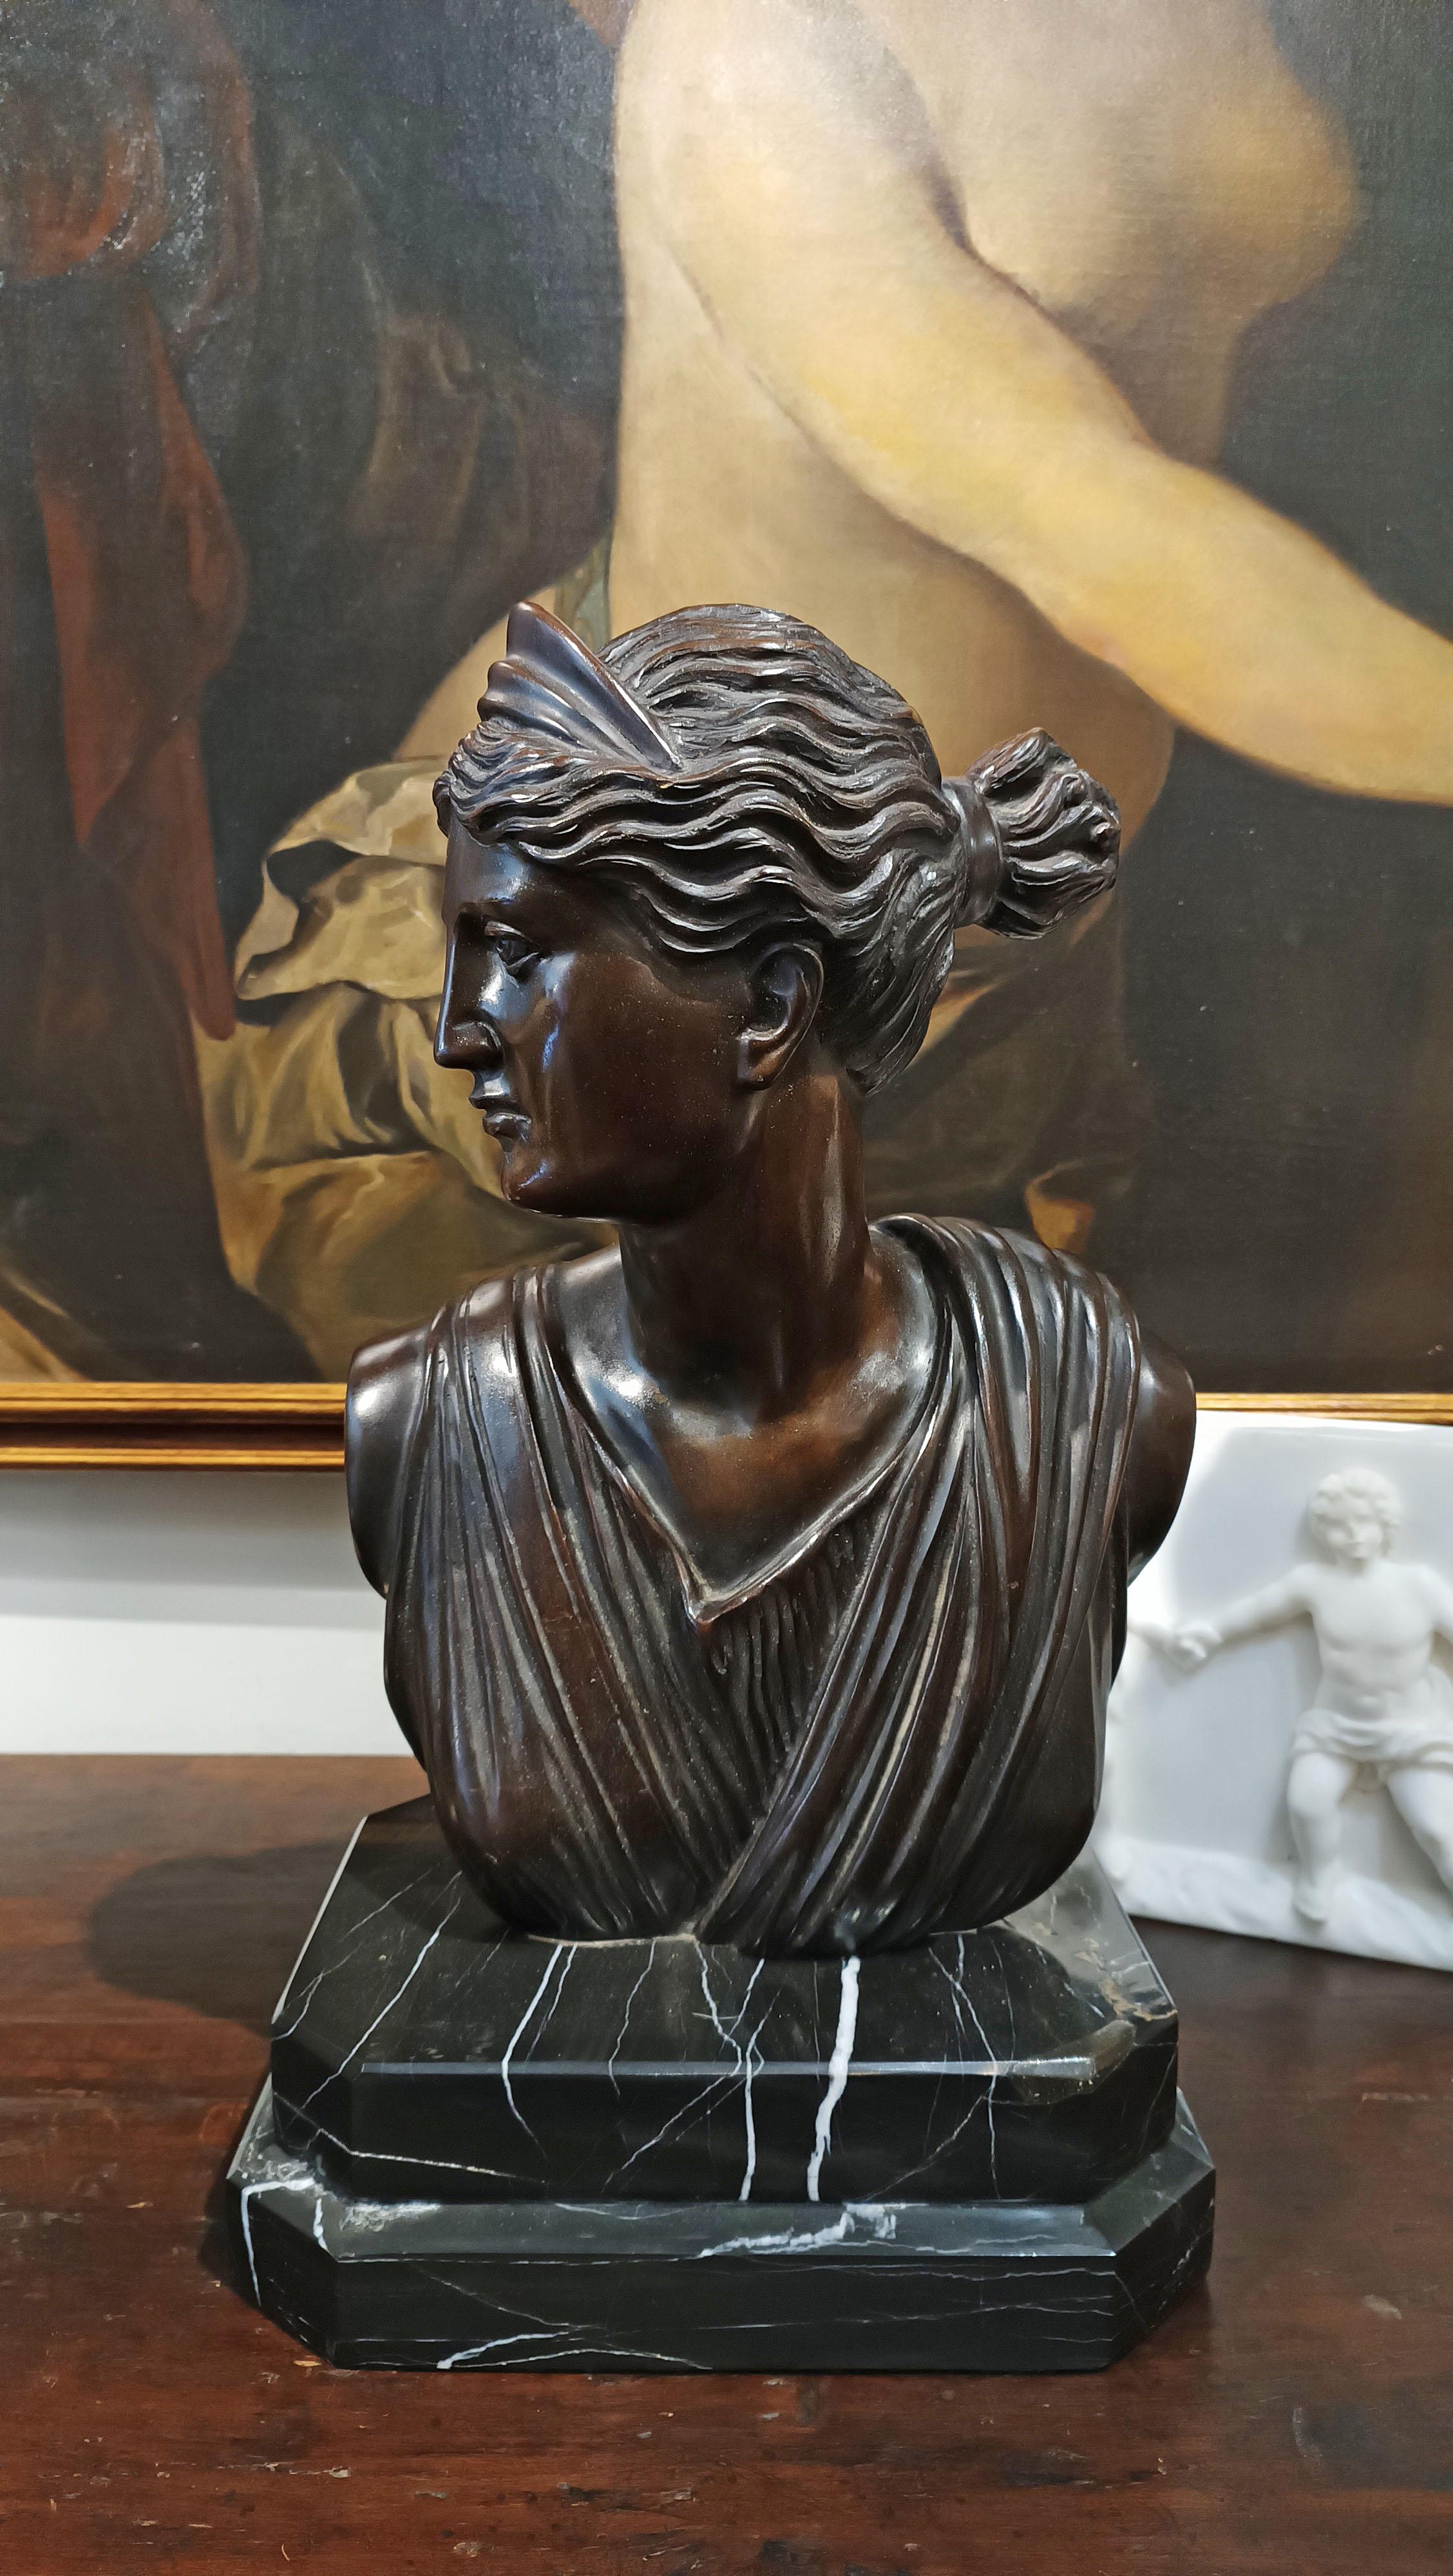 Schöne Büste aus Bronze im Wachsausschmelzverfahren, die die Göttin der Jagd Diana darstellt. Das Werk erinnert an den Stil der klassischen Kunst und zeigt die Göttin im Profil, mit zum Dutt zusammengerafftem Haar und dem traditionellen Diadem über